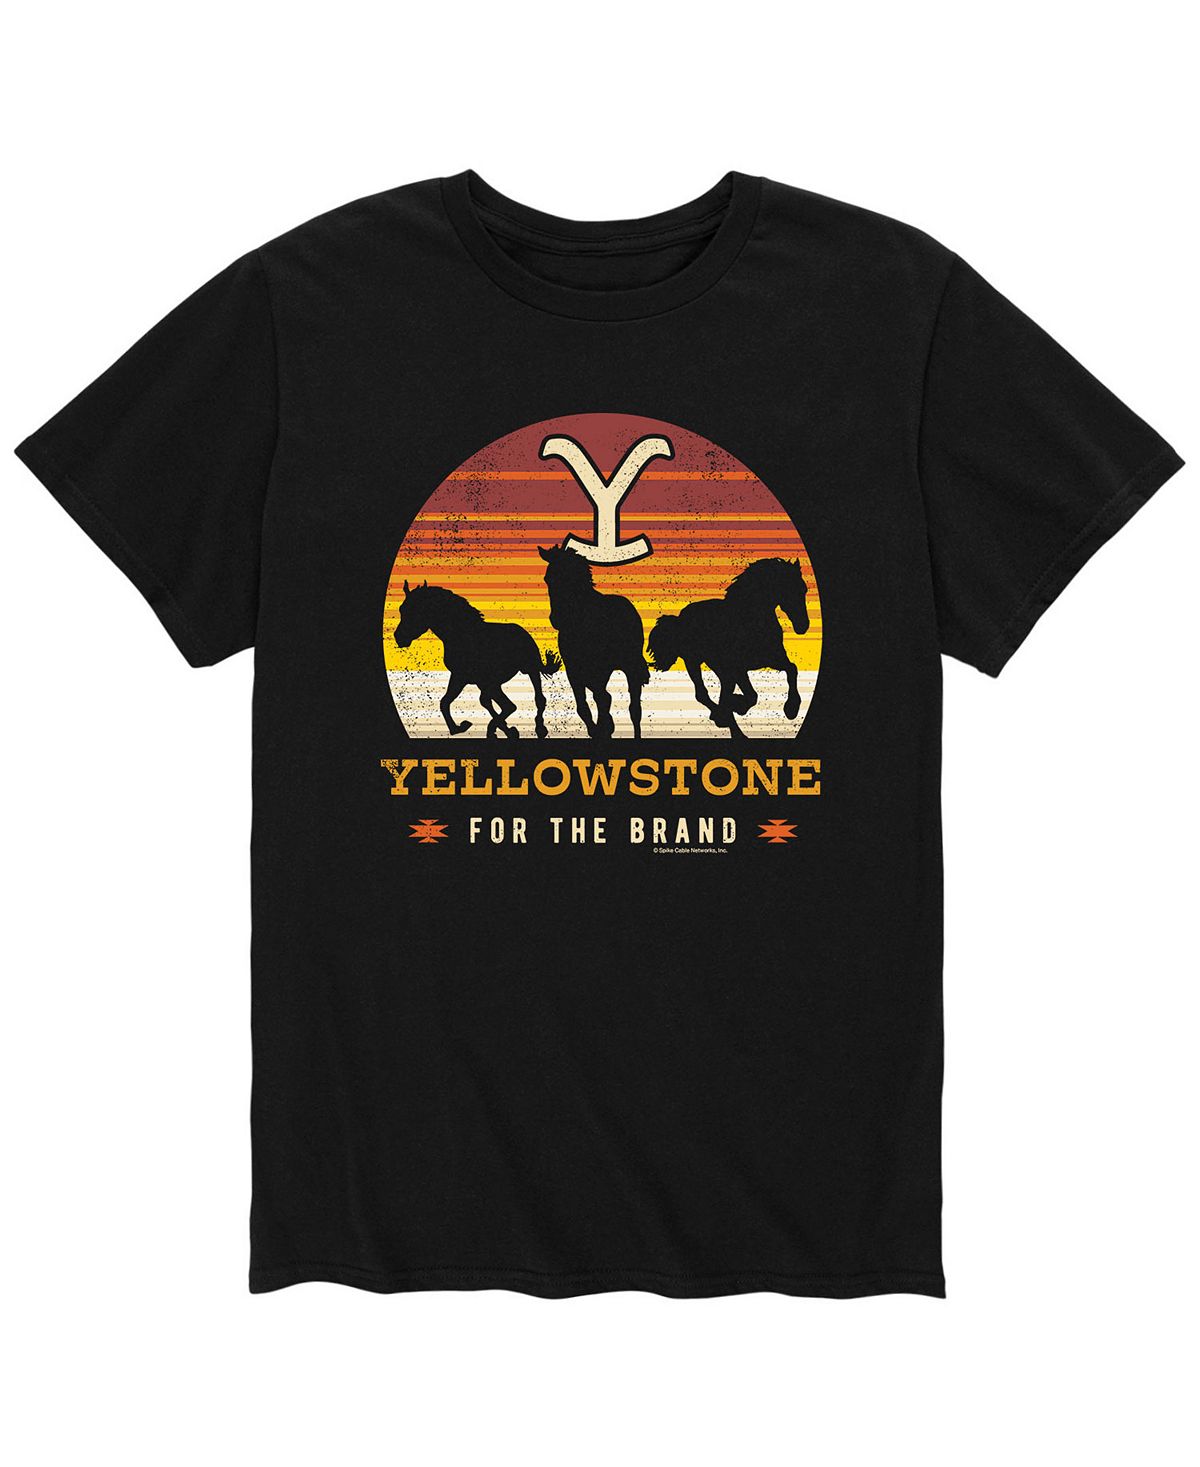 цена Мужская футболка Yellowstone Horses AIRWAVES